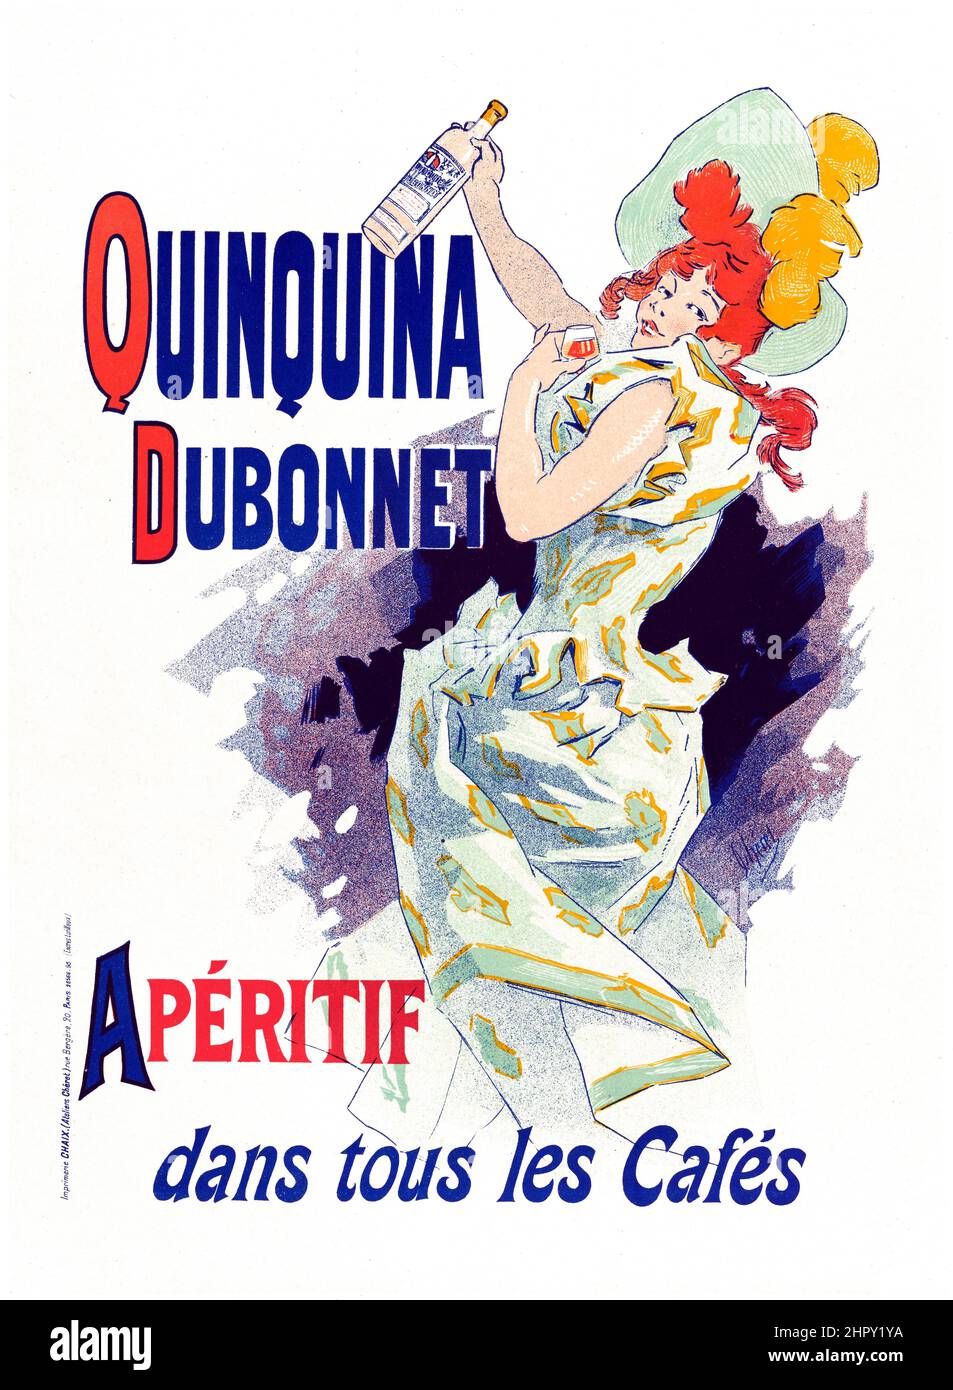 Les Maitres de l'Affiche - Quinquina Dubonnet - Aperitif dans tous les Cafés. Jules CHERET (Chéret) 1898. Old alcohol advertising poster. Stock Photo